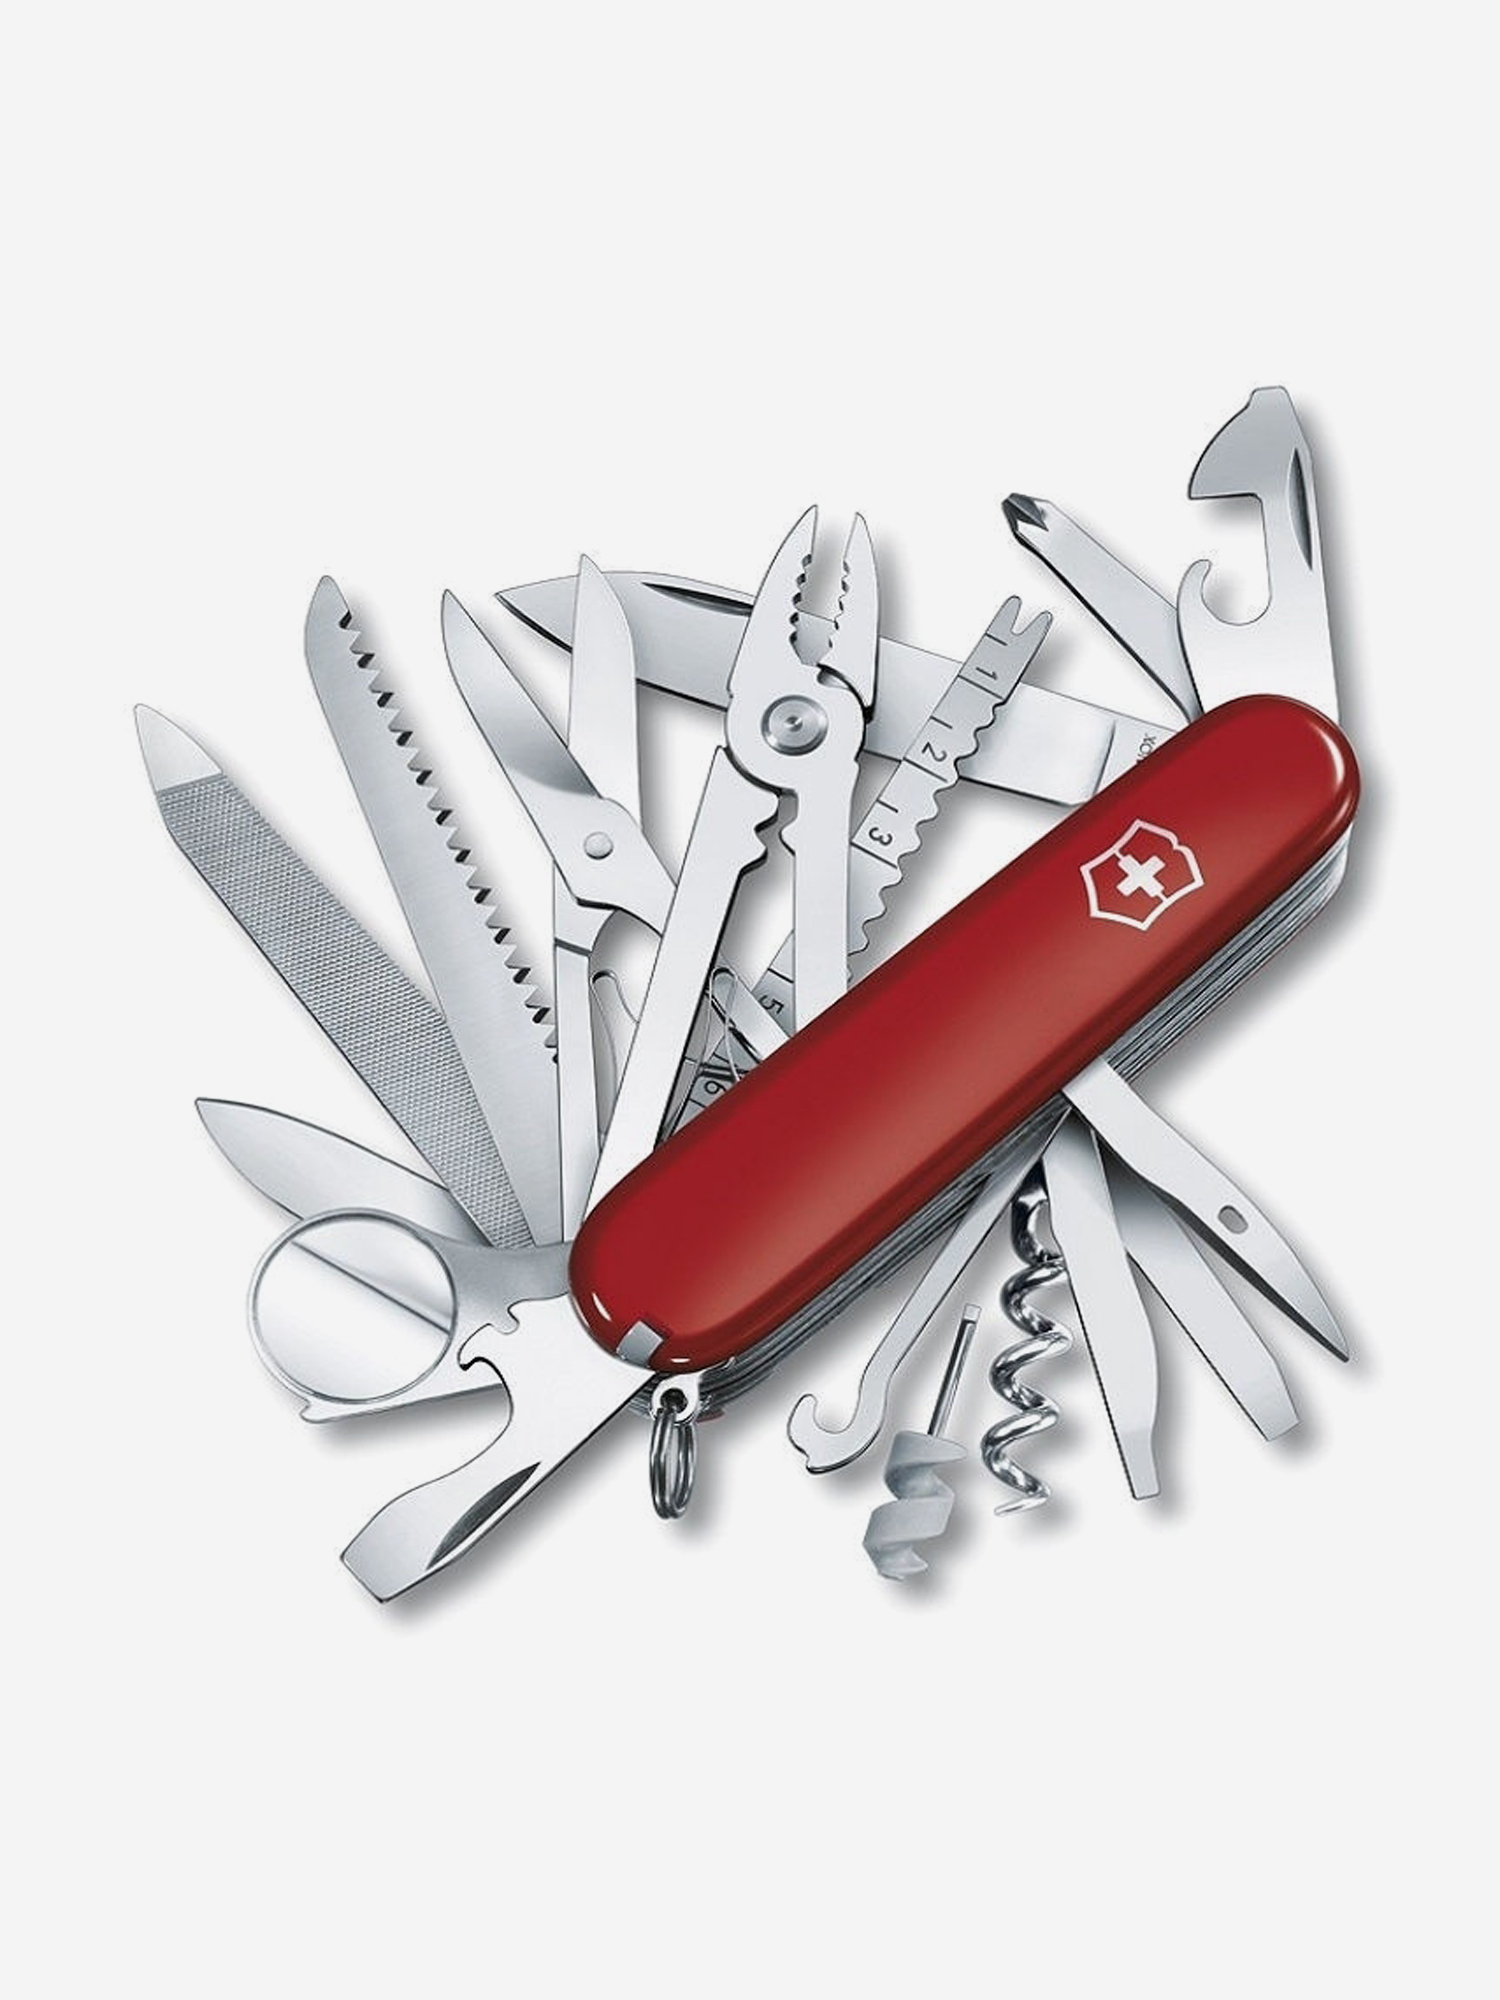 Нож складной Victorinox SwissChamp, 91 мм, 33 функции, Красный нож складной victorinox climber 91 мм 14 функций красный